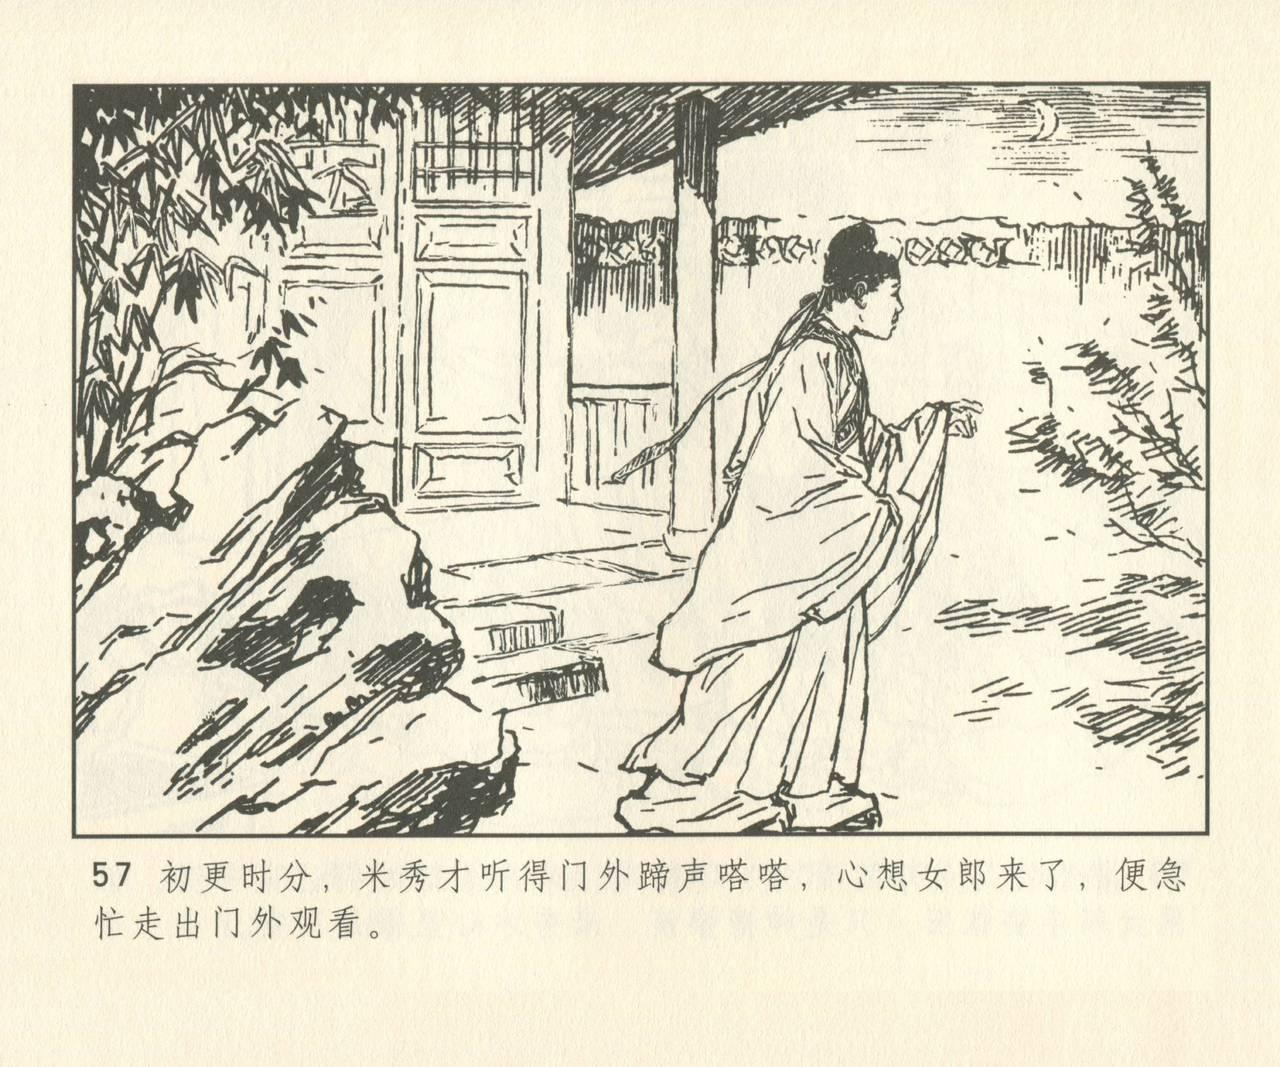 聊斋志异 张玮等绘 天津人民美术出版社 卷二十一 ~ 三十 185